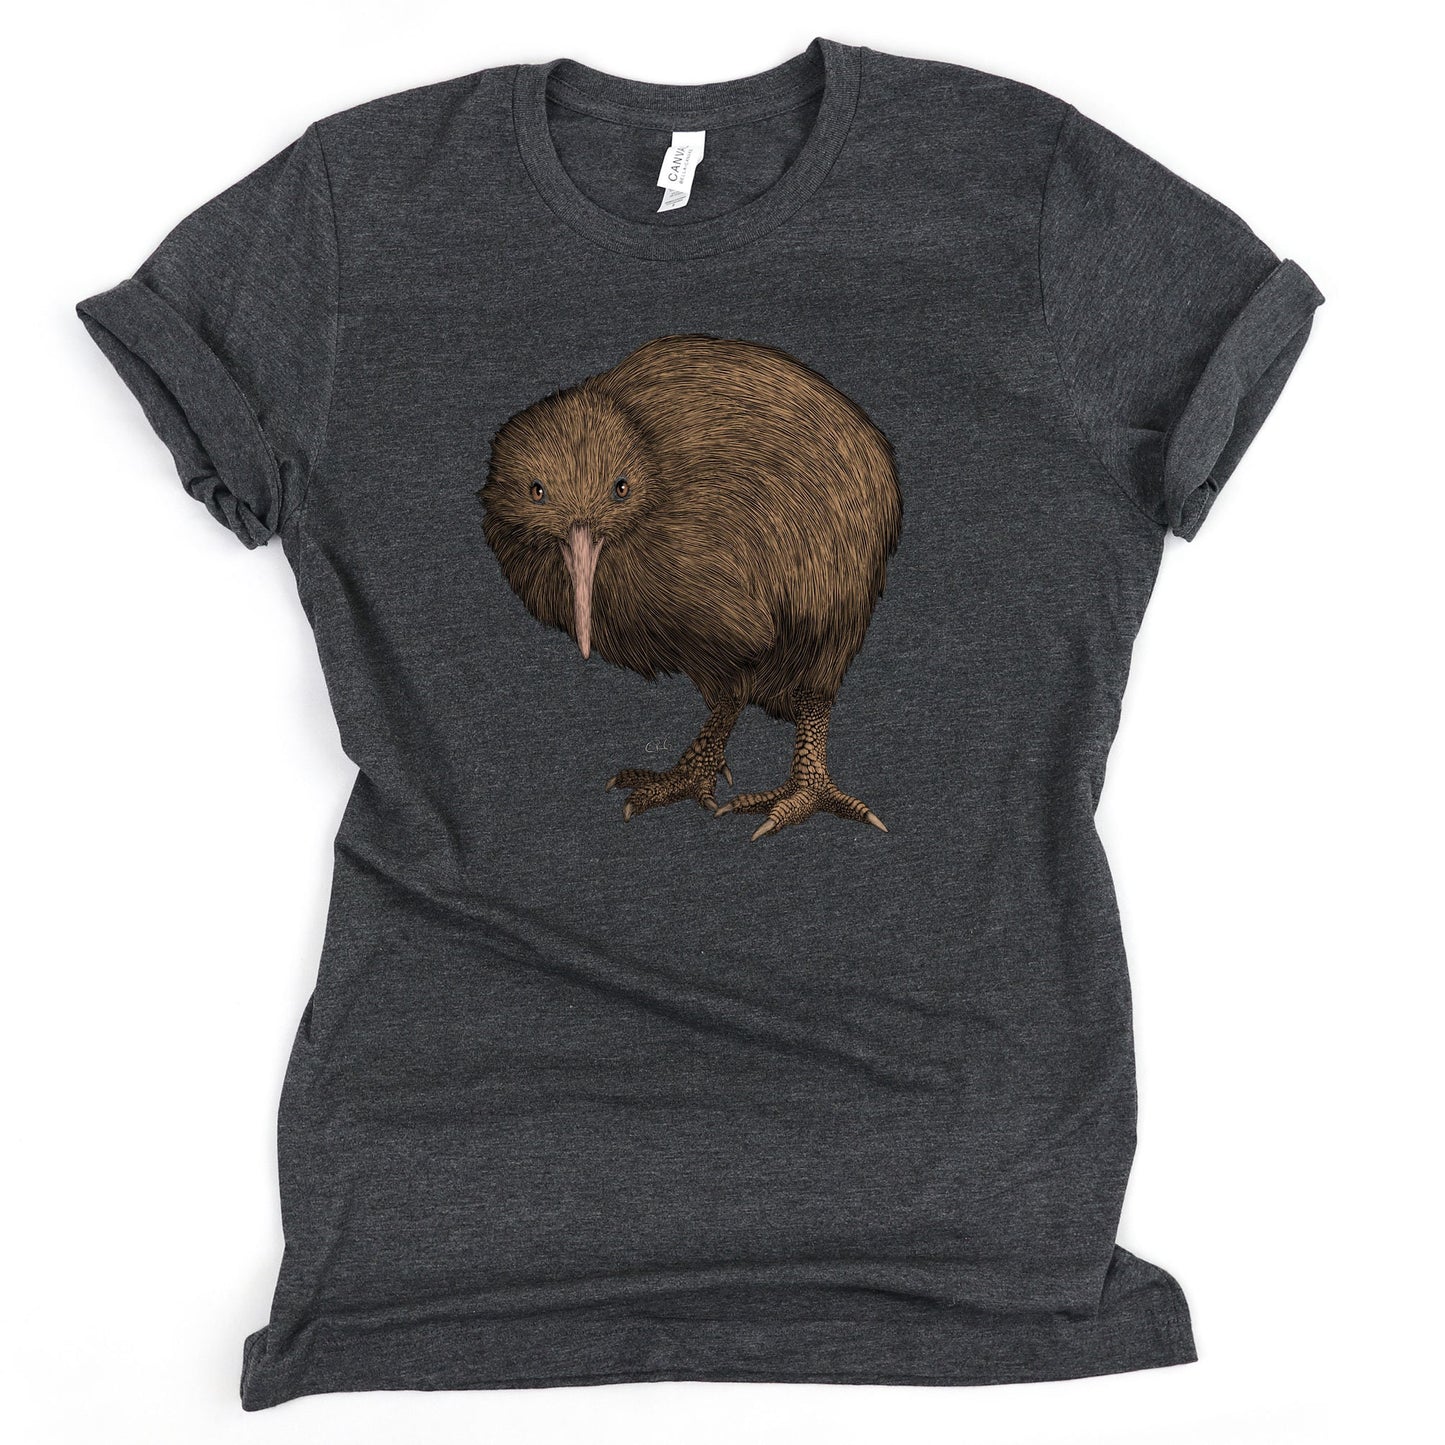 Kiwi Bird Shirt